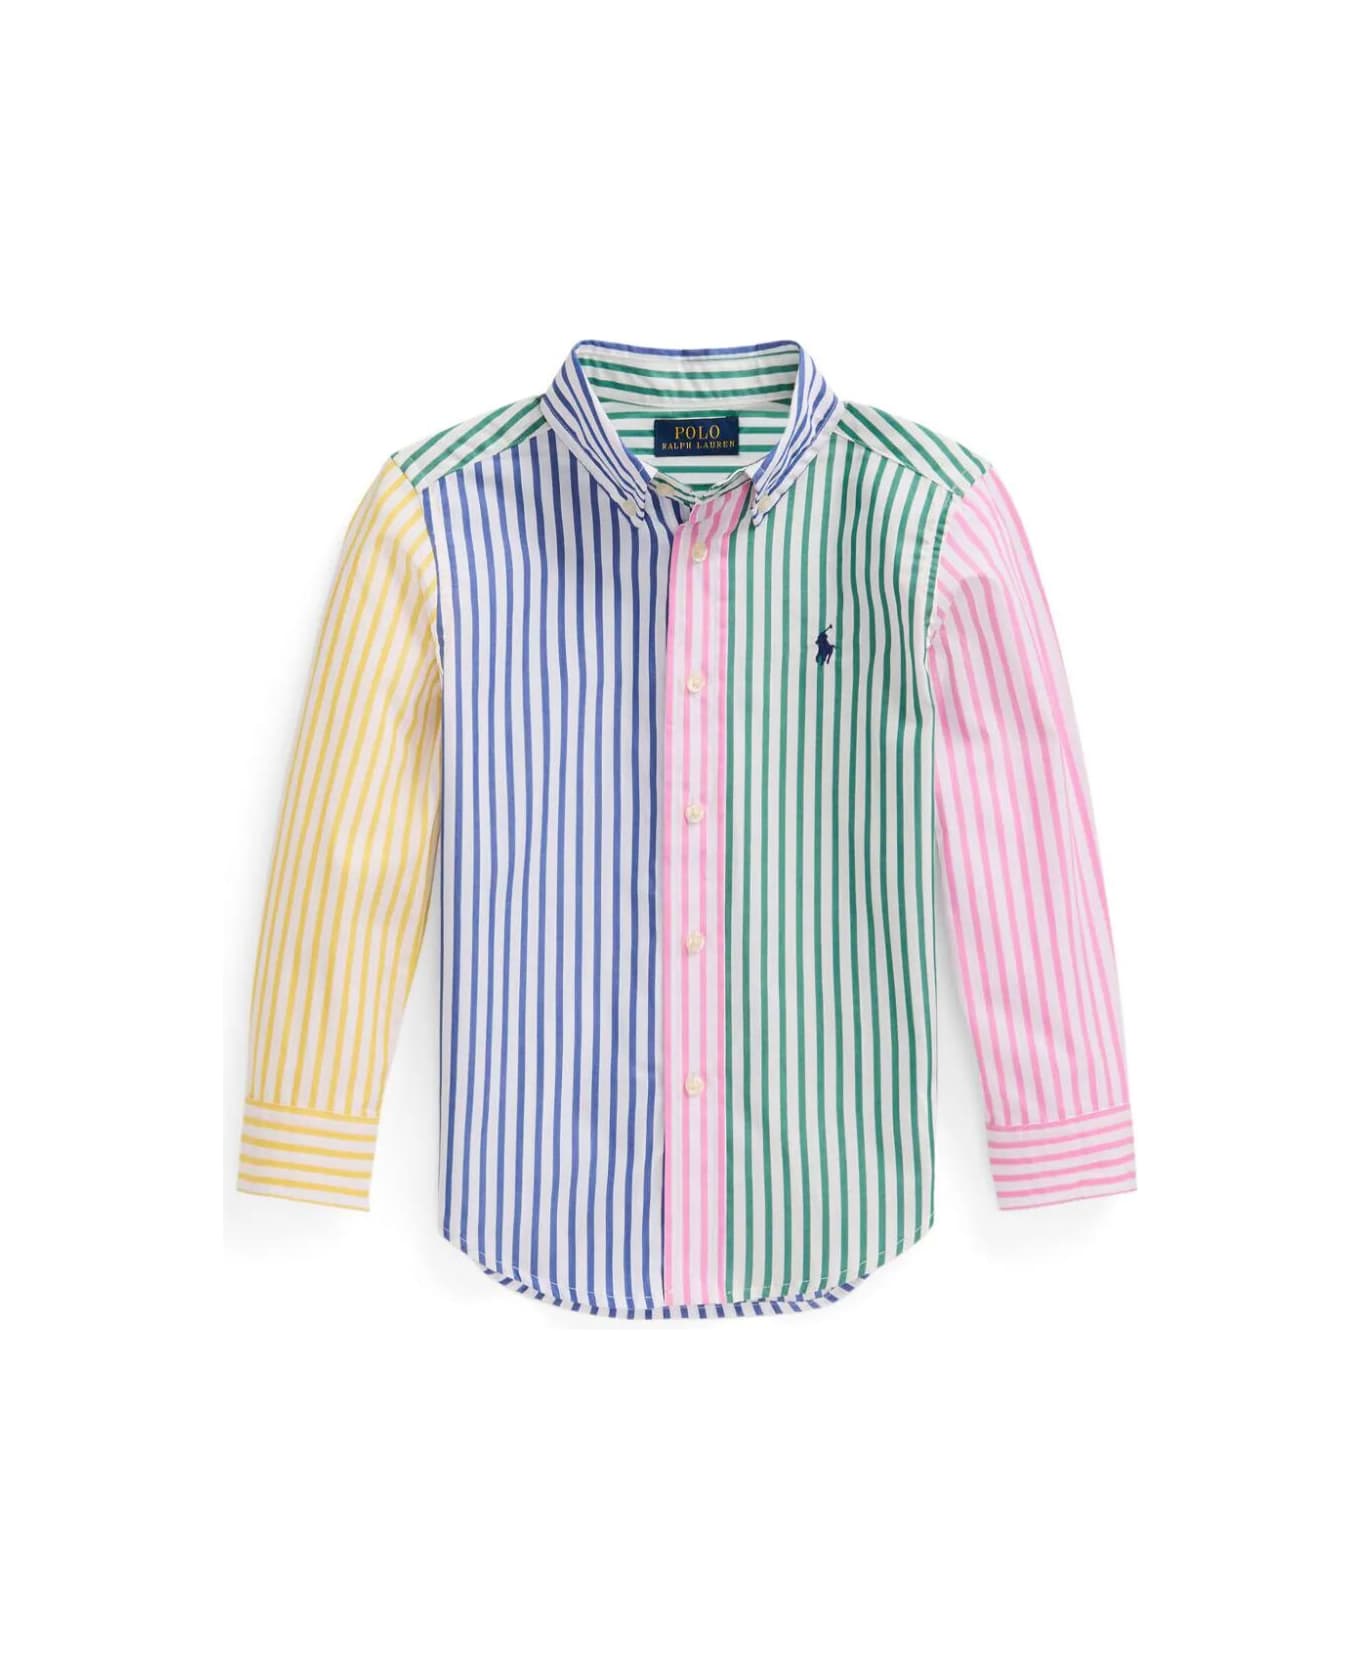 Polo Ralph Lauren Ls Bd Ppc Shirts Sport Shirt - Funshirt シャツ